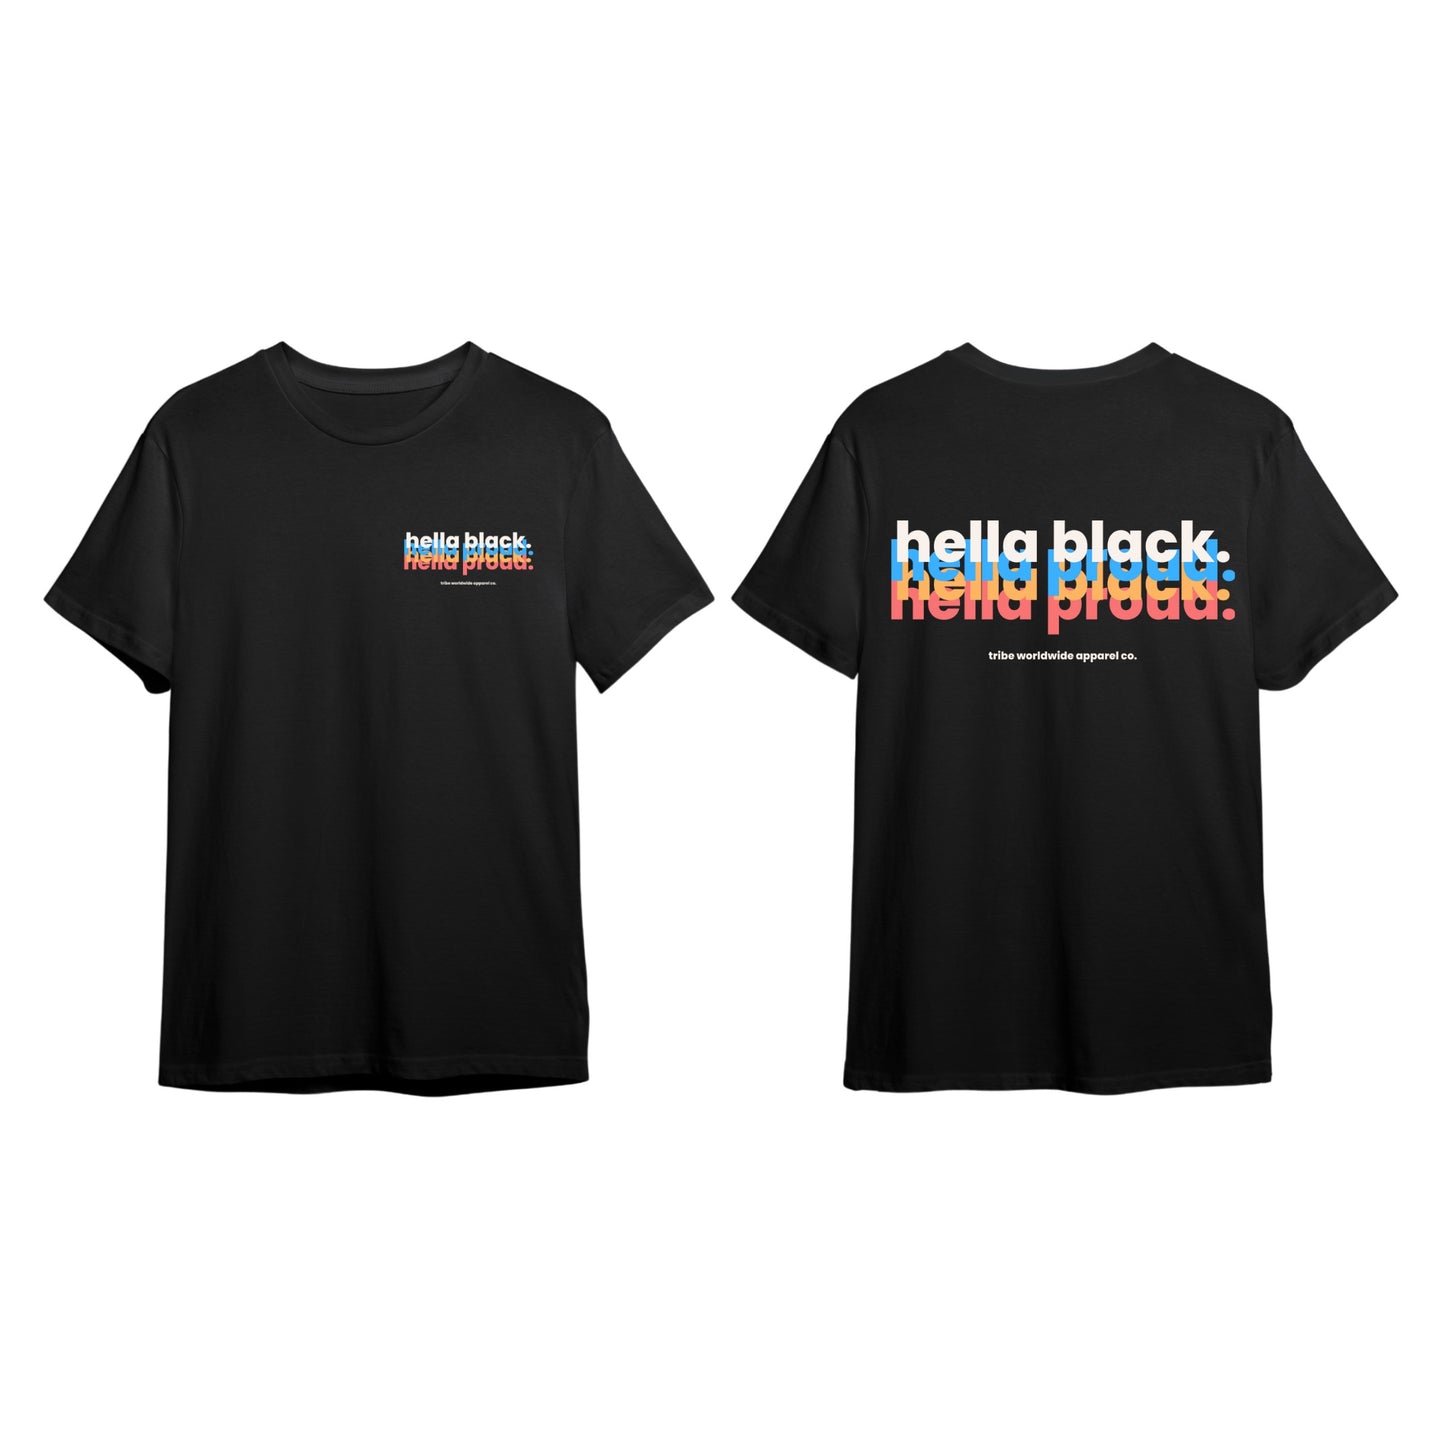 🚨NEW ITEM Hella Black. Hella Proud. “Technicolor” T-Shirt